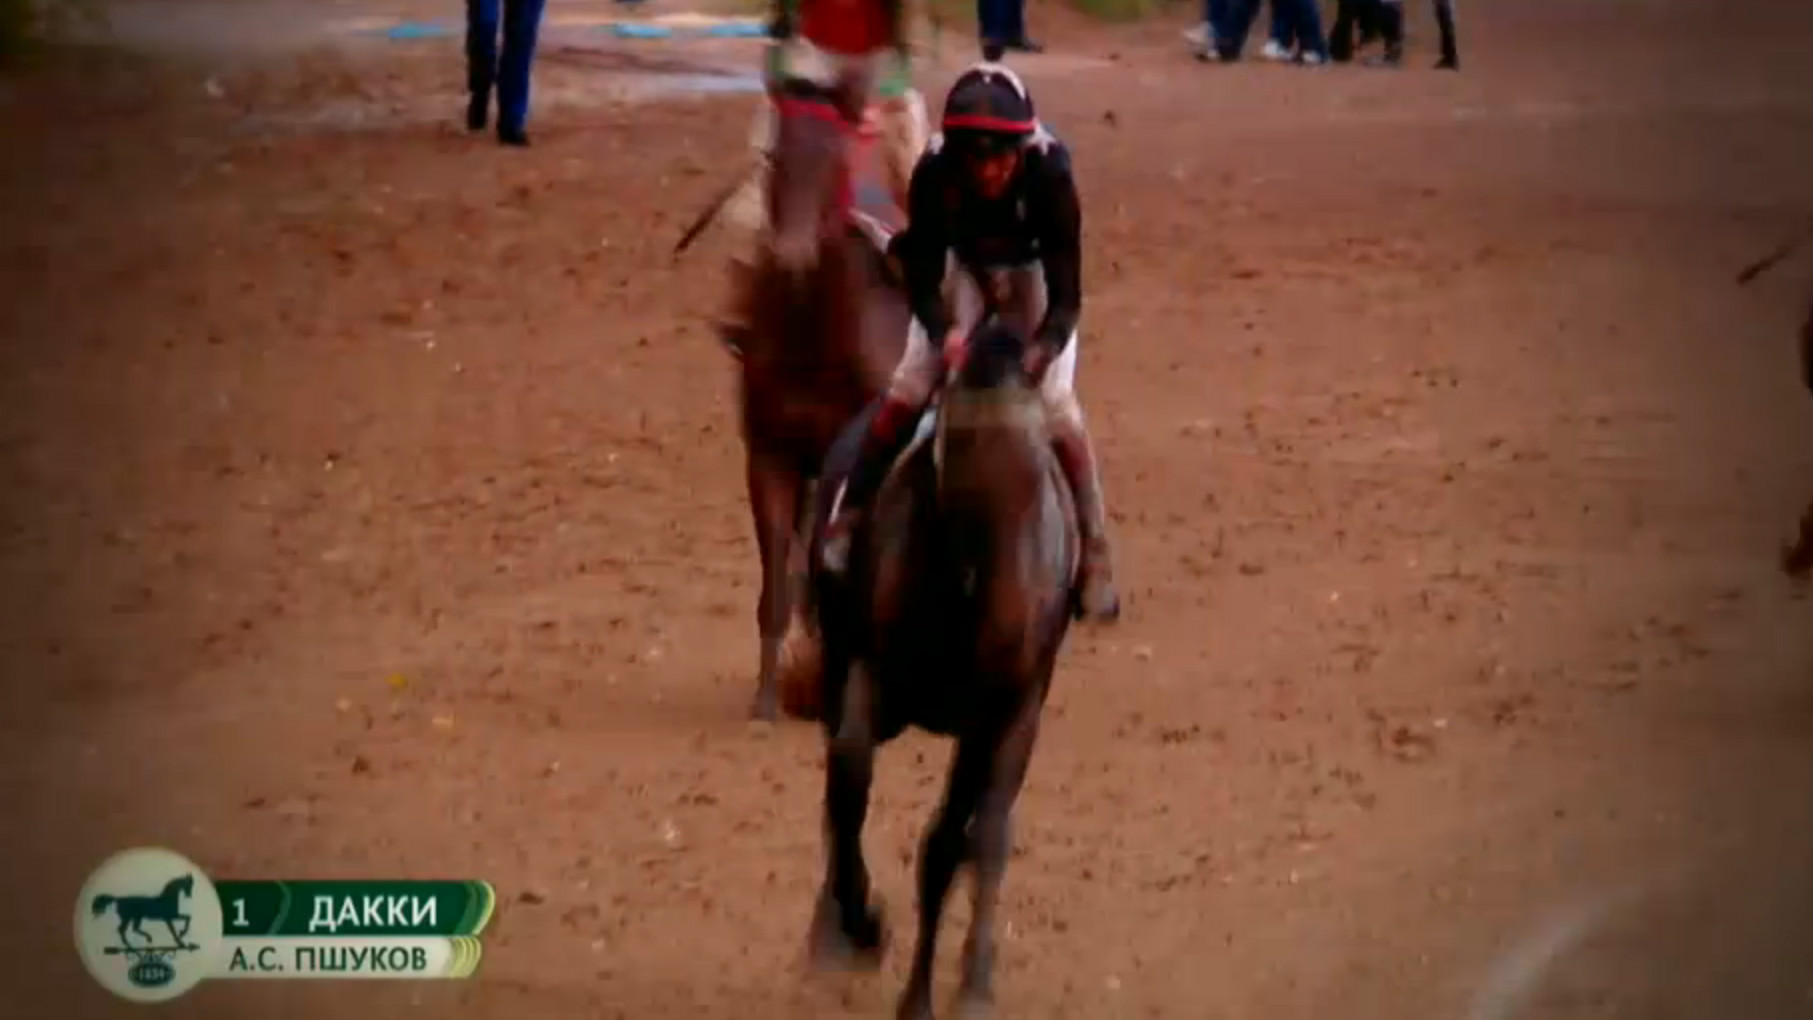 Победитель третьего заезда скачек в Гудермесе – лошадь Рамзана Кадырова по кличке Дакки